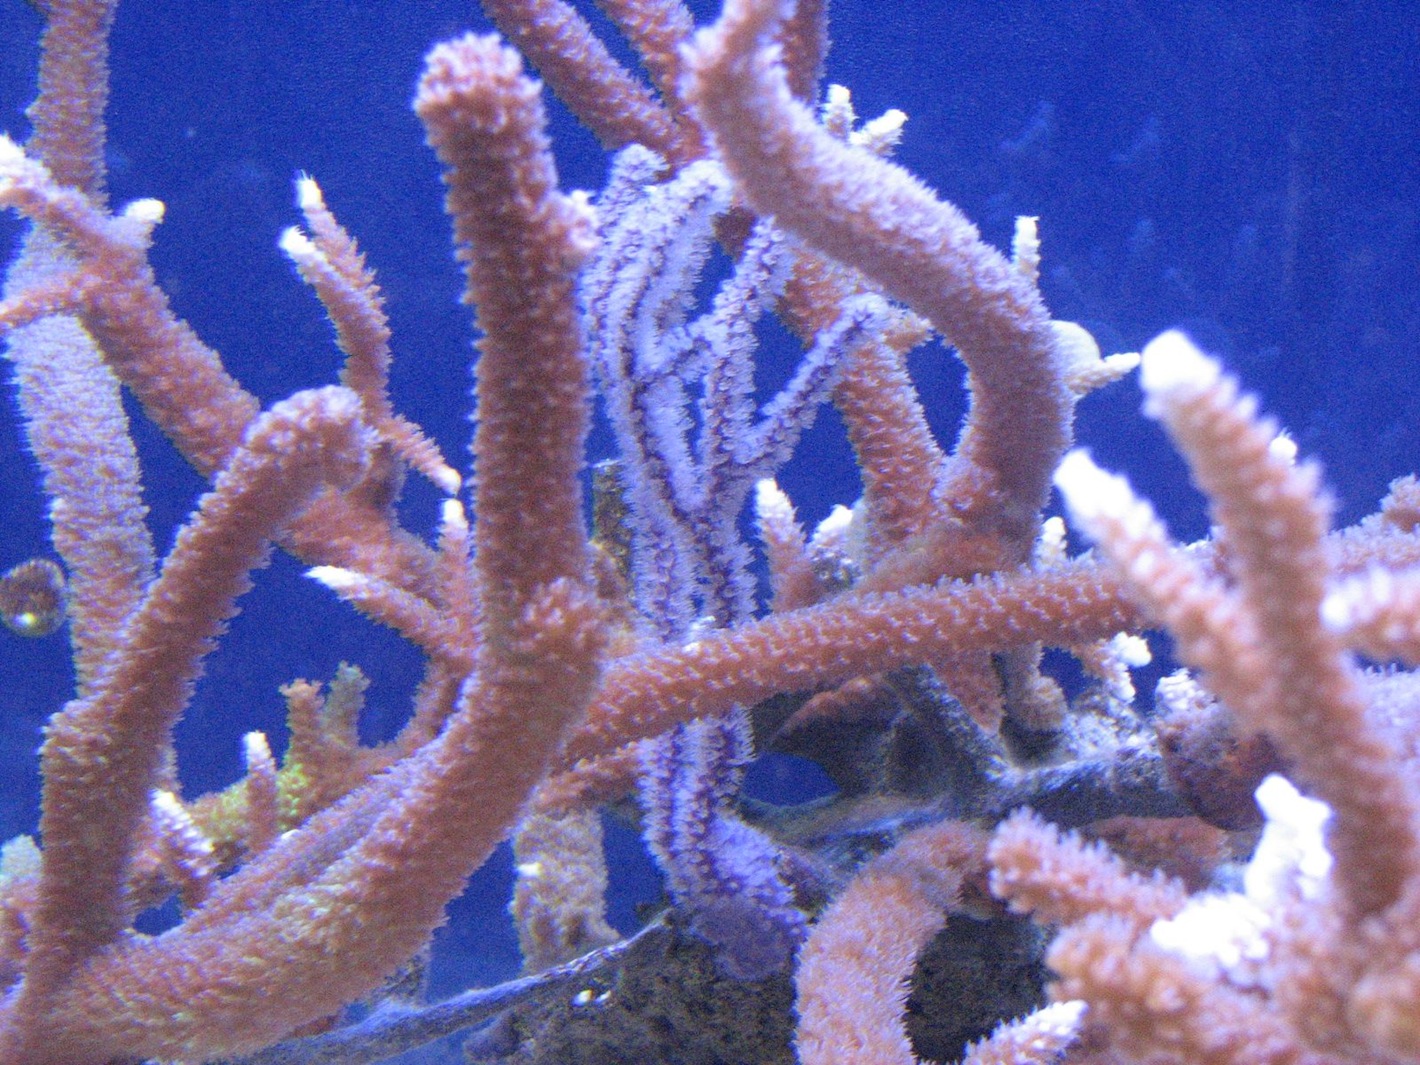 corals feeding